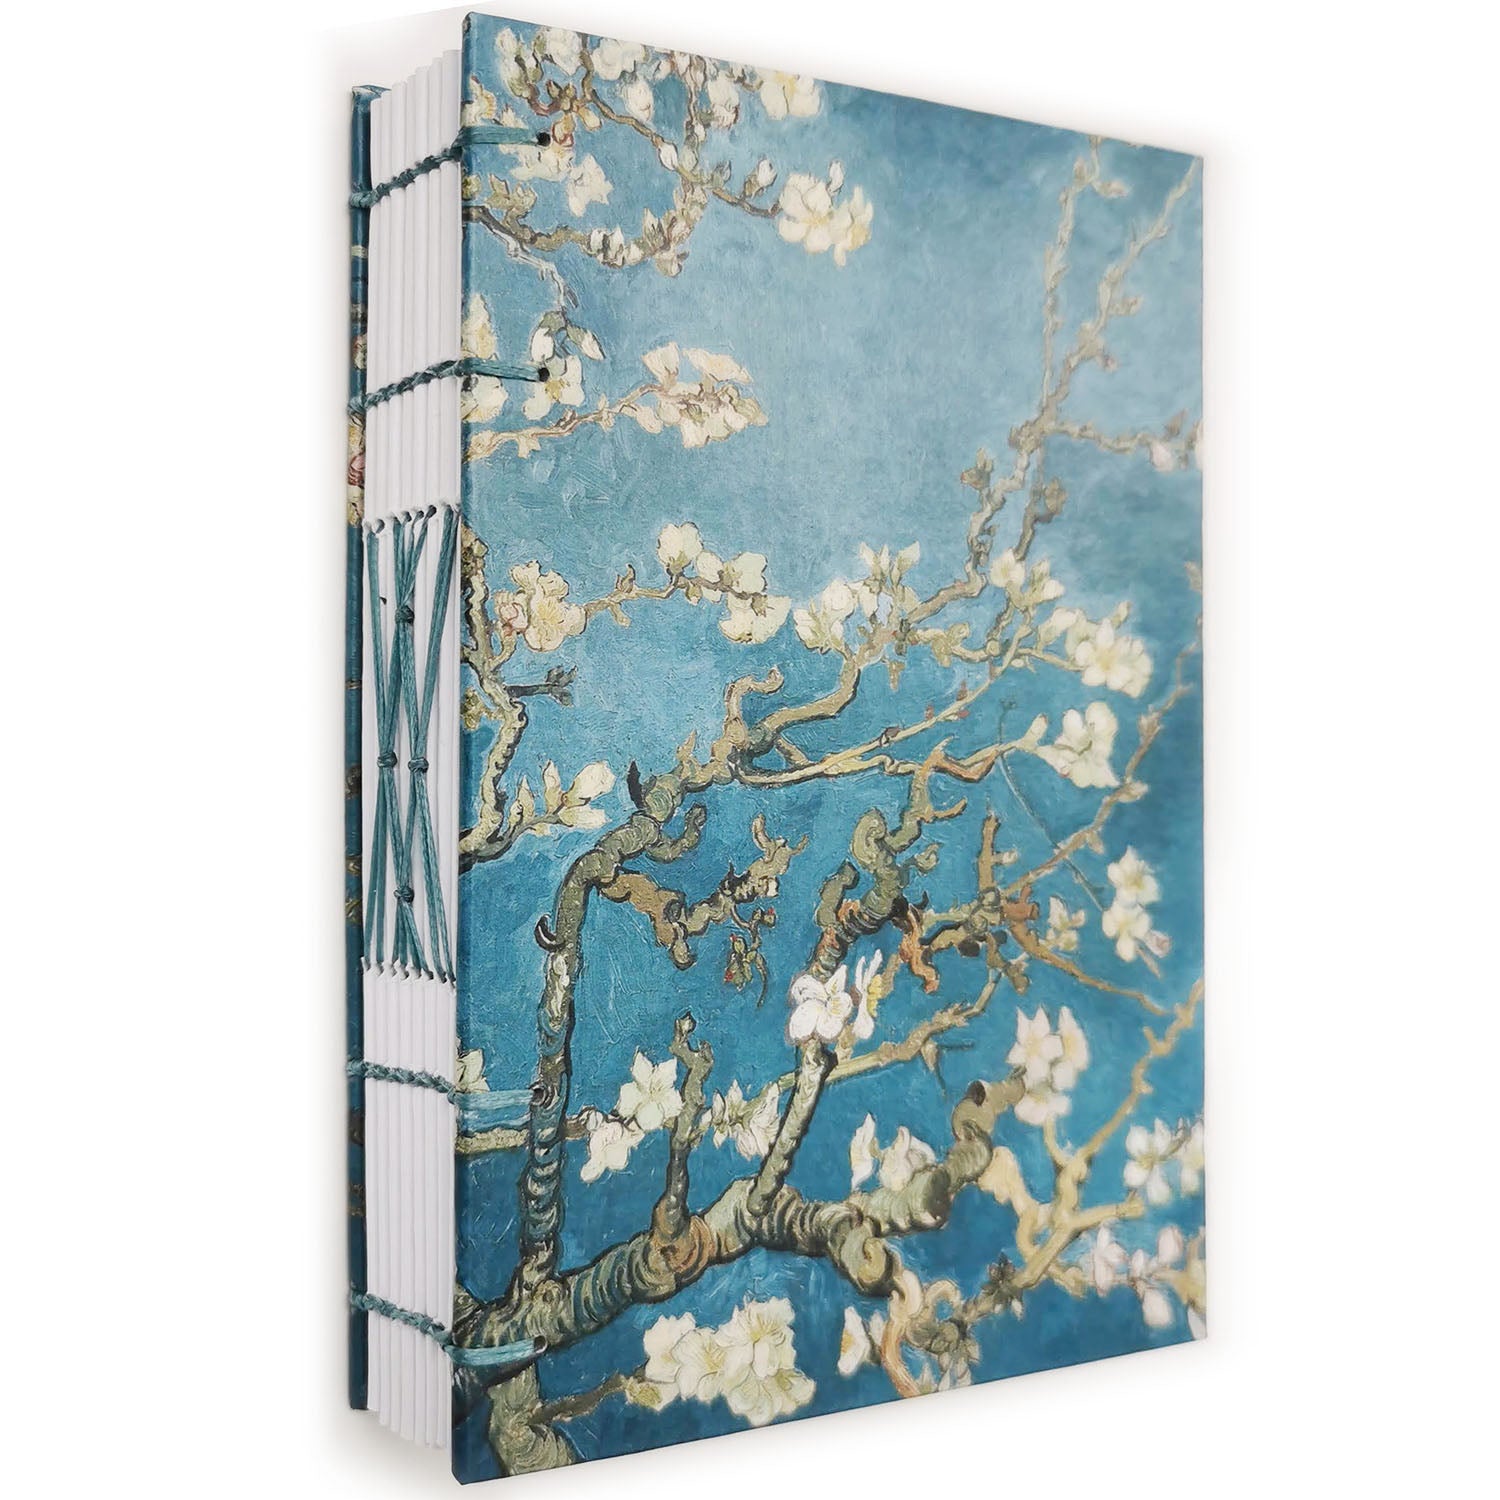 Χειροποίητo Σημειωματάριo με Βυζαντινή Βιβλιοδεσία - Vincent van Gogh - Almond blossom